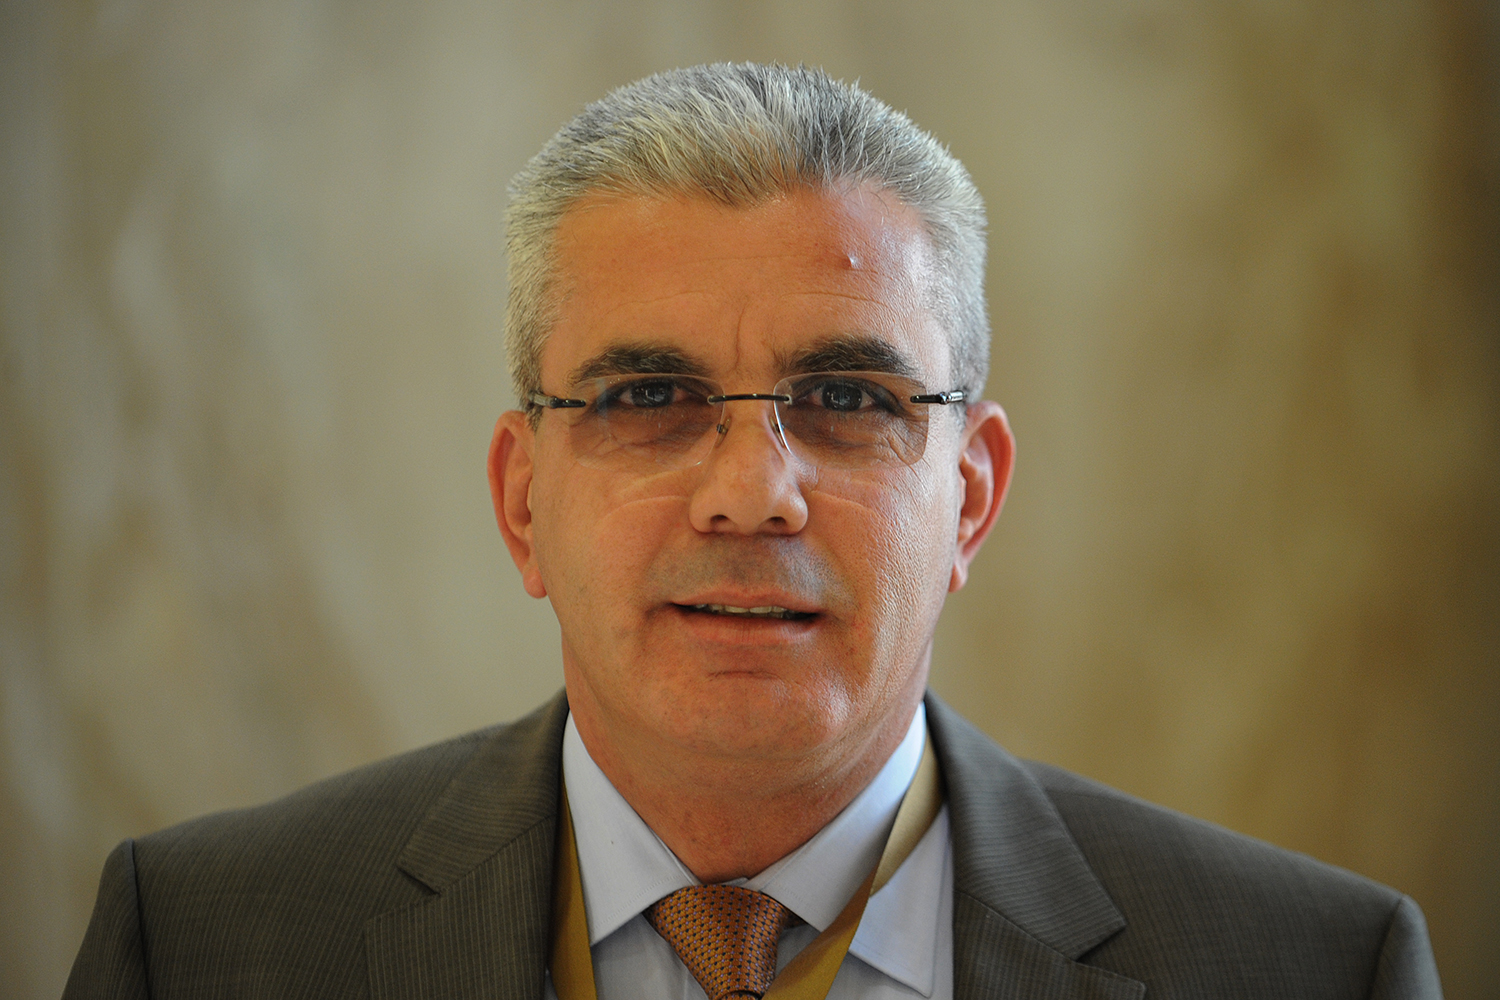 Palestinian Ambassador to Kuwait Rami Tahboub